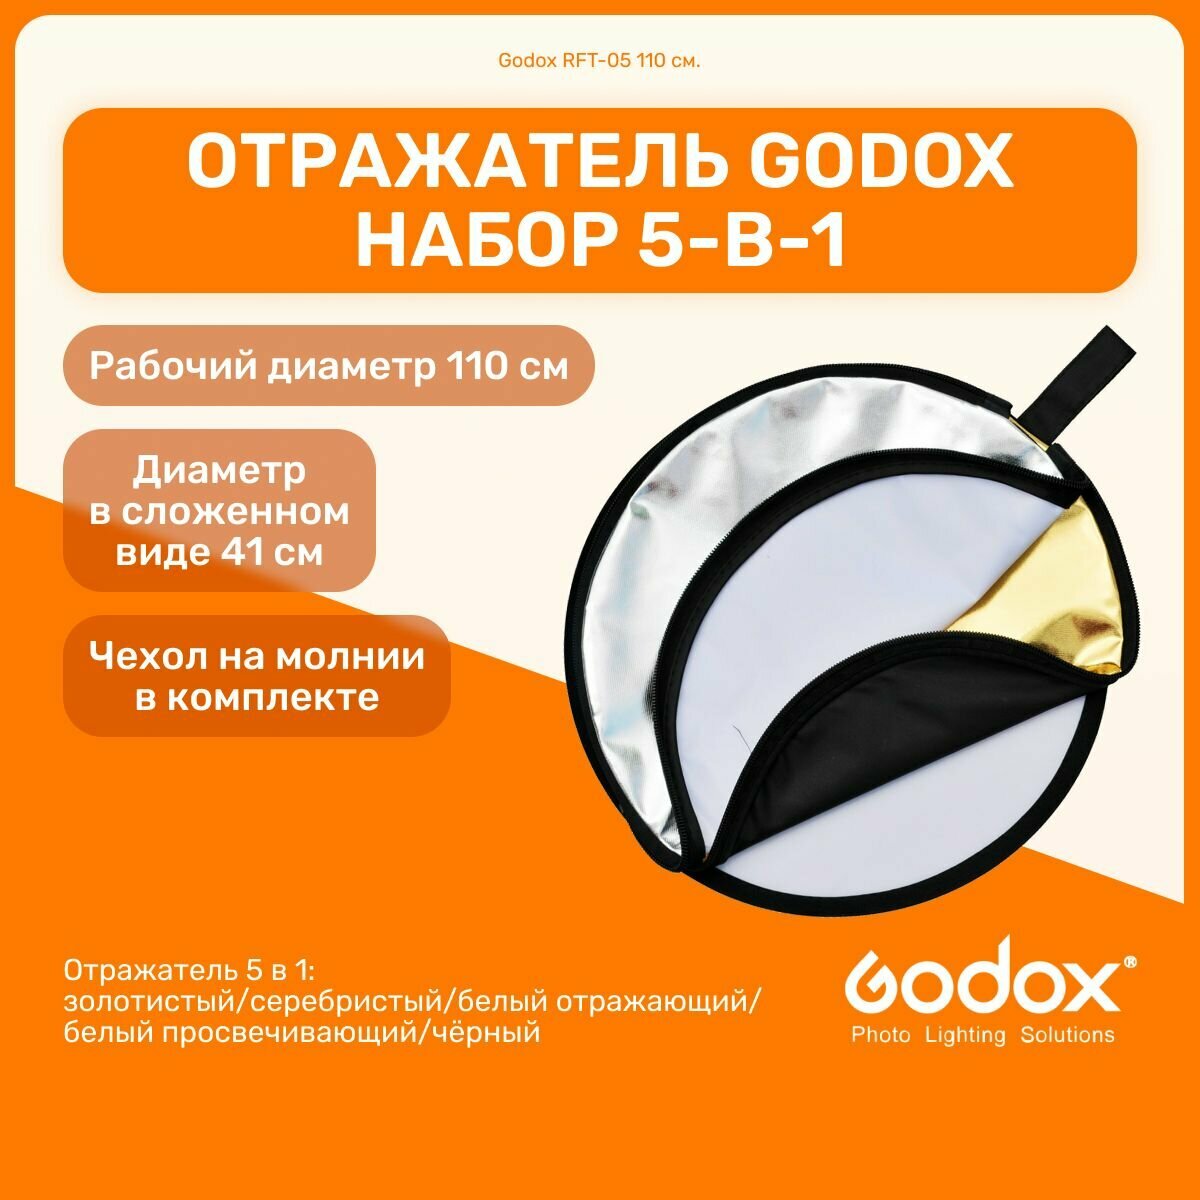 Отражатель Godox RFT-05 110 см. набор 5-в-1 круглый складной золотистый серебристый белый отражающий/просвечивающий чёрный для фото и видео съемок